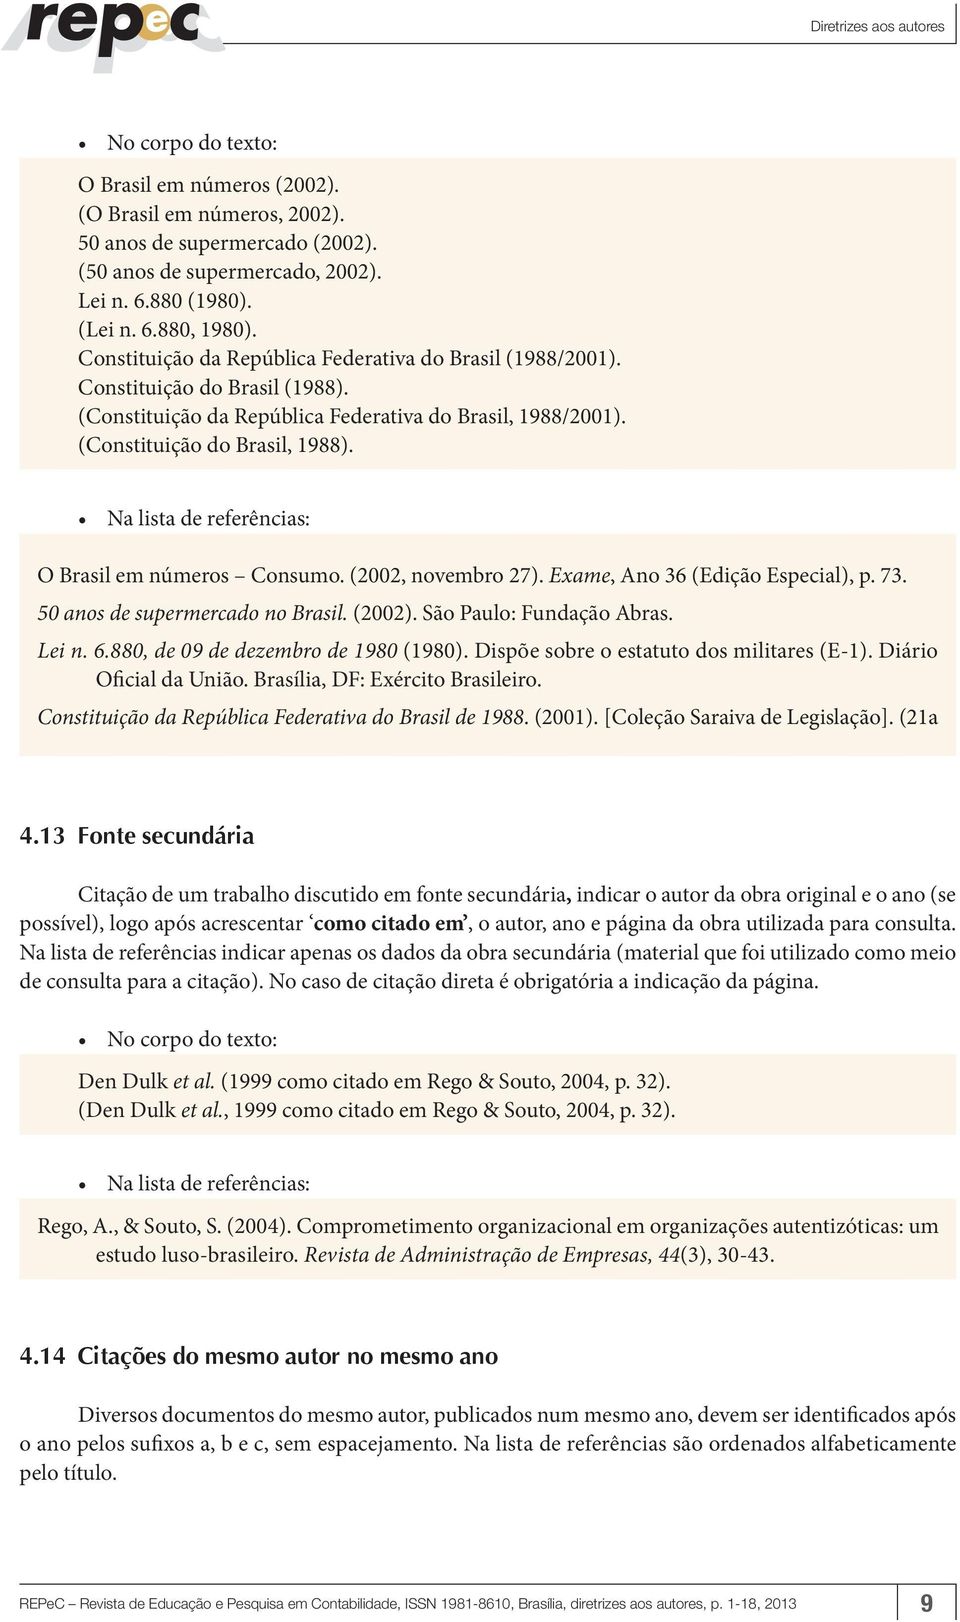 O Brasil em números Consumo. (2002, novembro 27). Exame, Ano 36 (Edição Especial), p. 73. 50 anos de supermercado no Brasil. (2002). São Paulo: Fundação Abras. Lei n. 6.